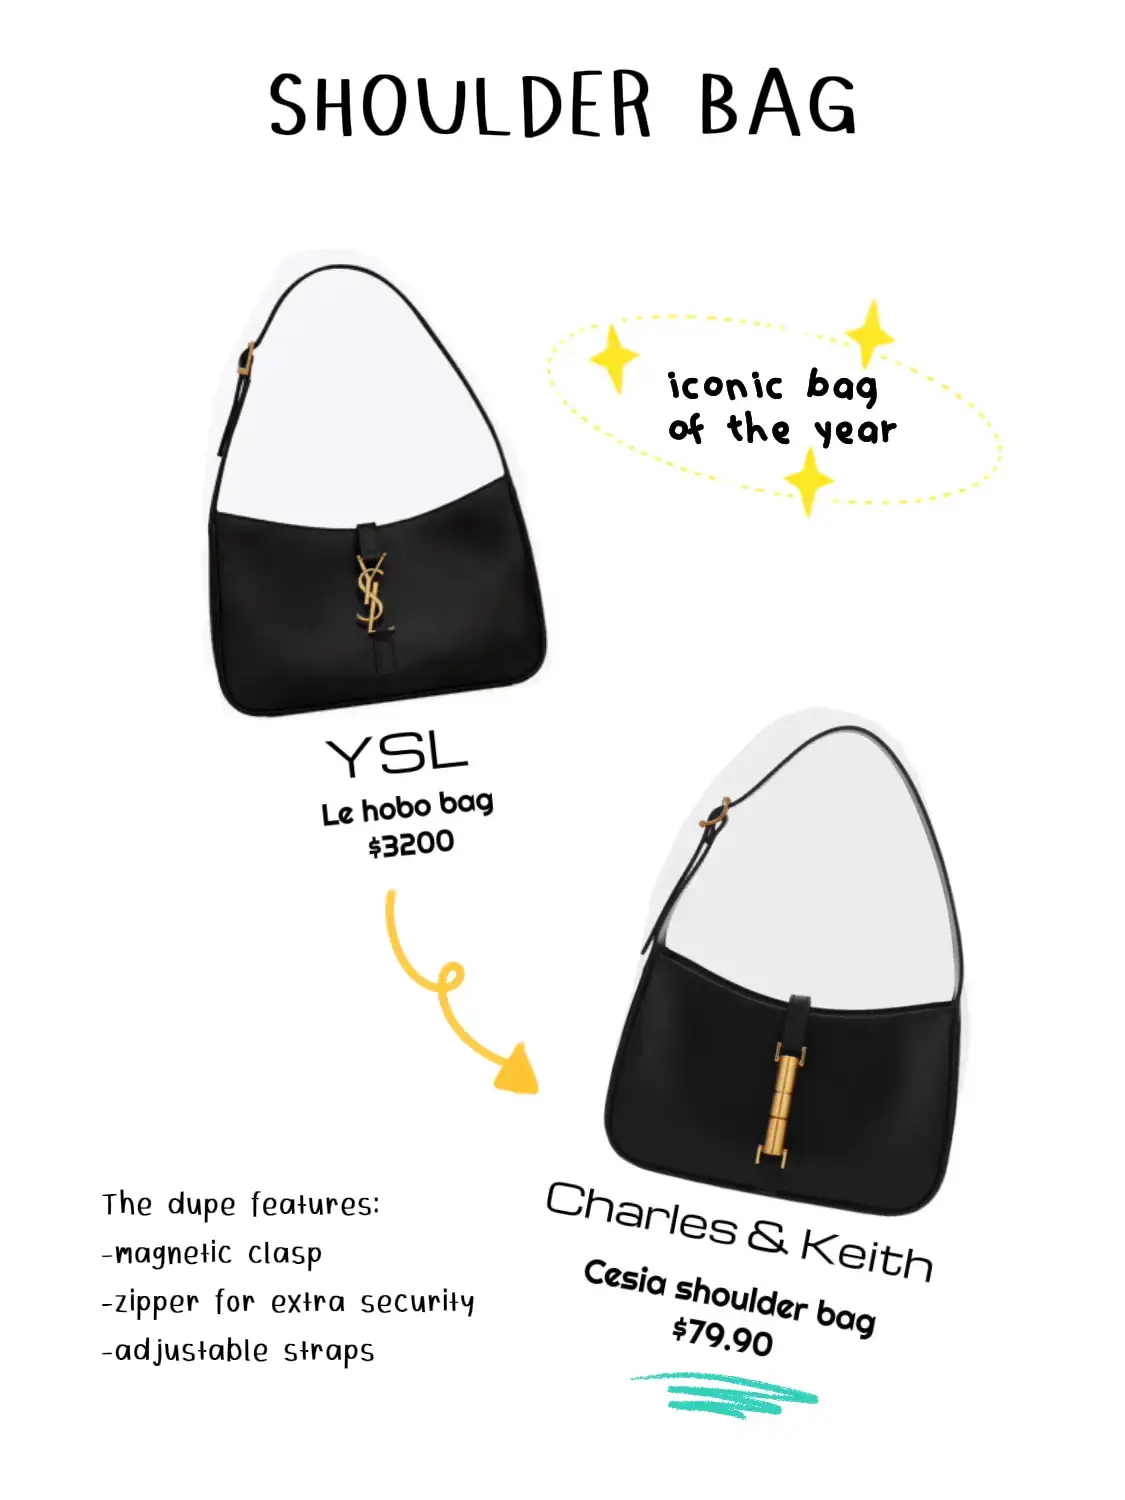 Shimmery designer bags 😍 Saint - Sassy classy aesthetic